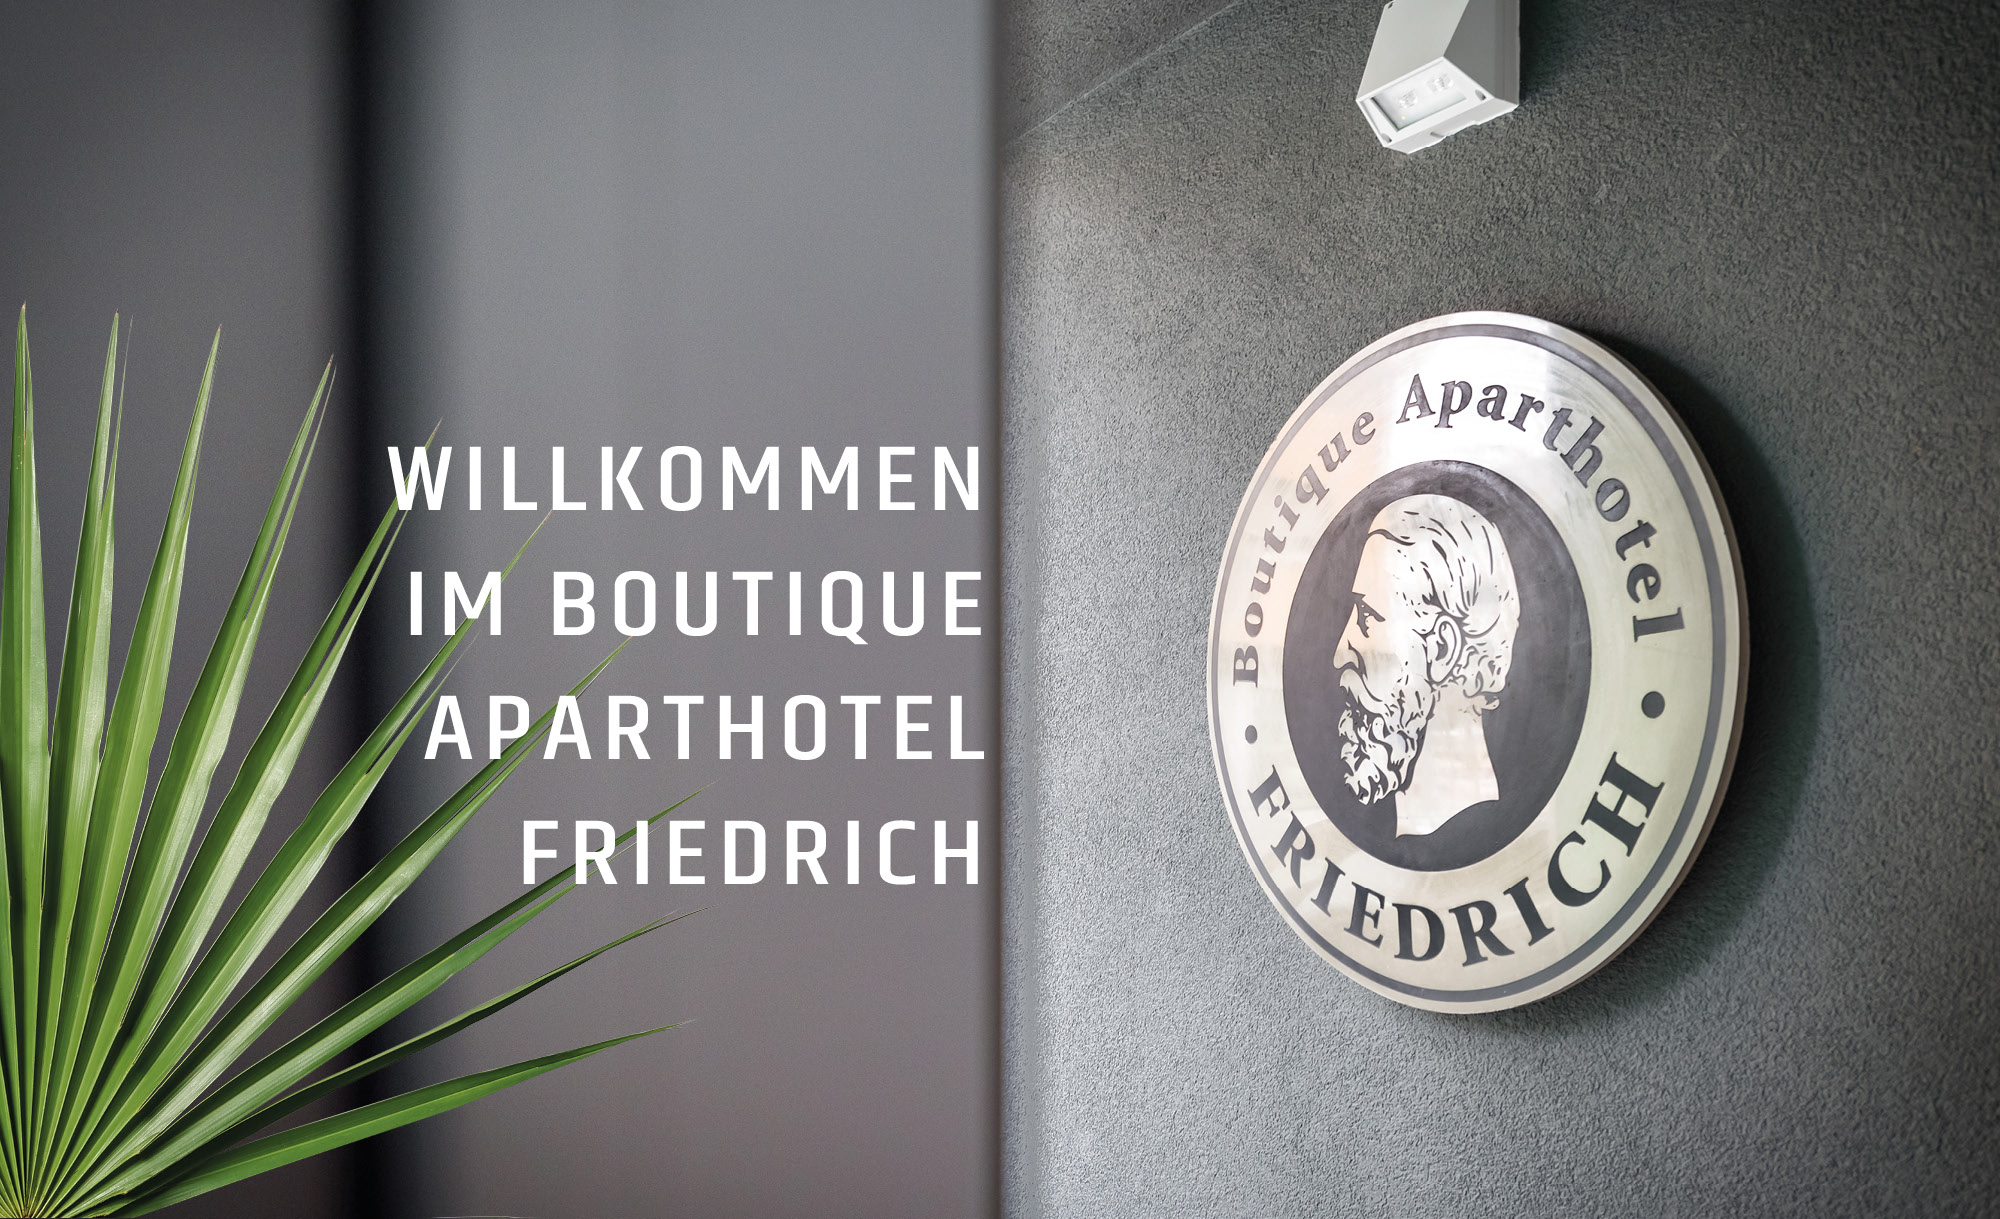 Willkommen im Boutique Aparthotel Friedrich